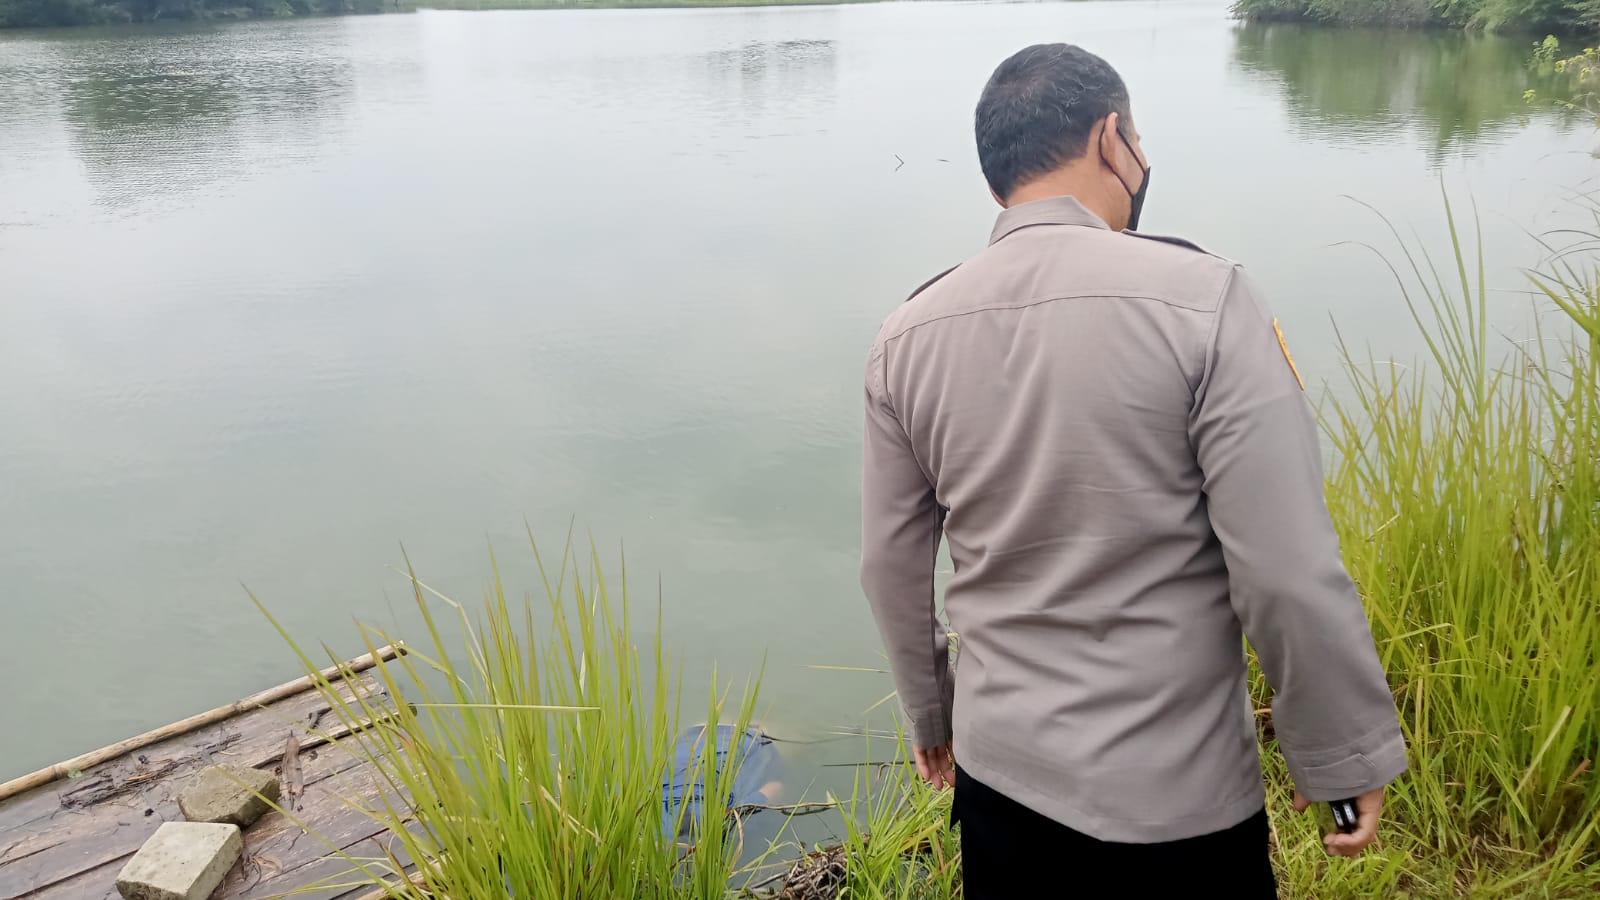 Hilang Seharian, Wanita Paruh Baya Ditemukan Ngambang di Danau Nyempil Kabupaten Bekasi